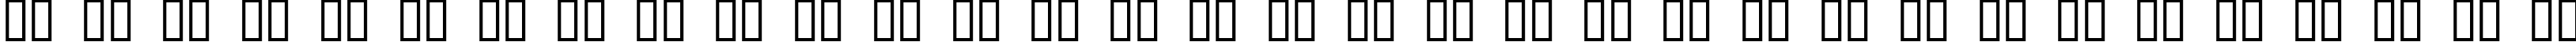 Пример написания русского алфавита шрифтом Antelope H